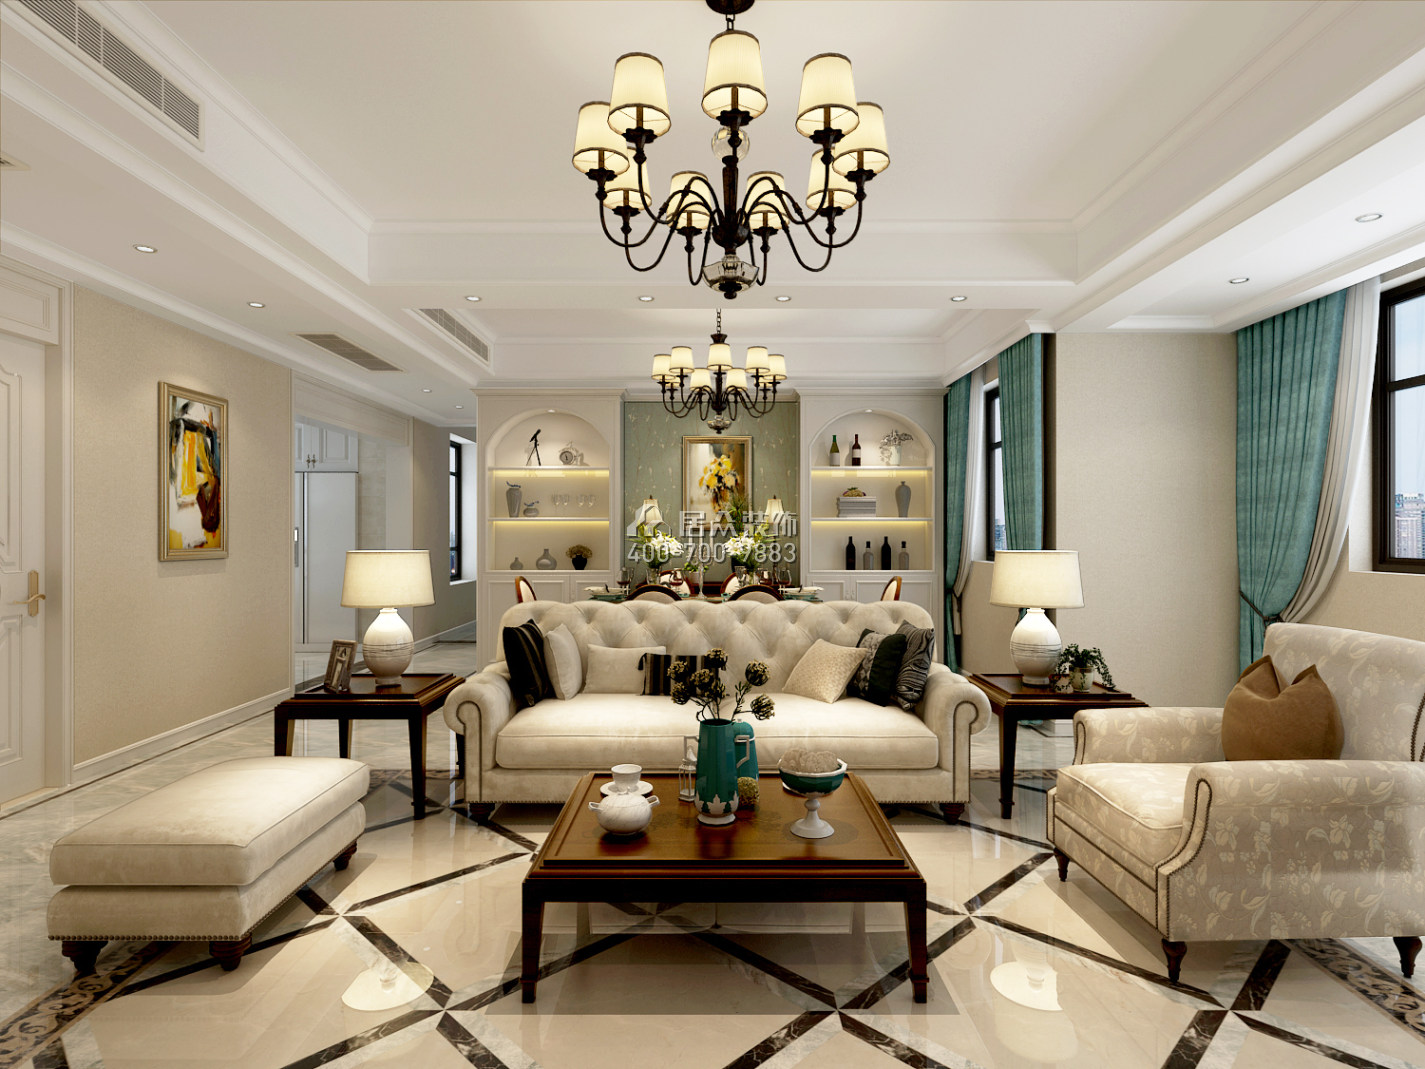 紫御华庭134平方米美式风格平层户型客厅装修效果图